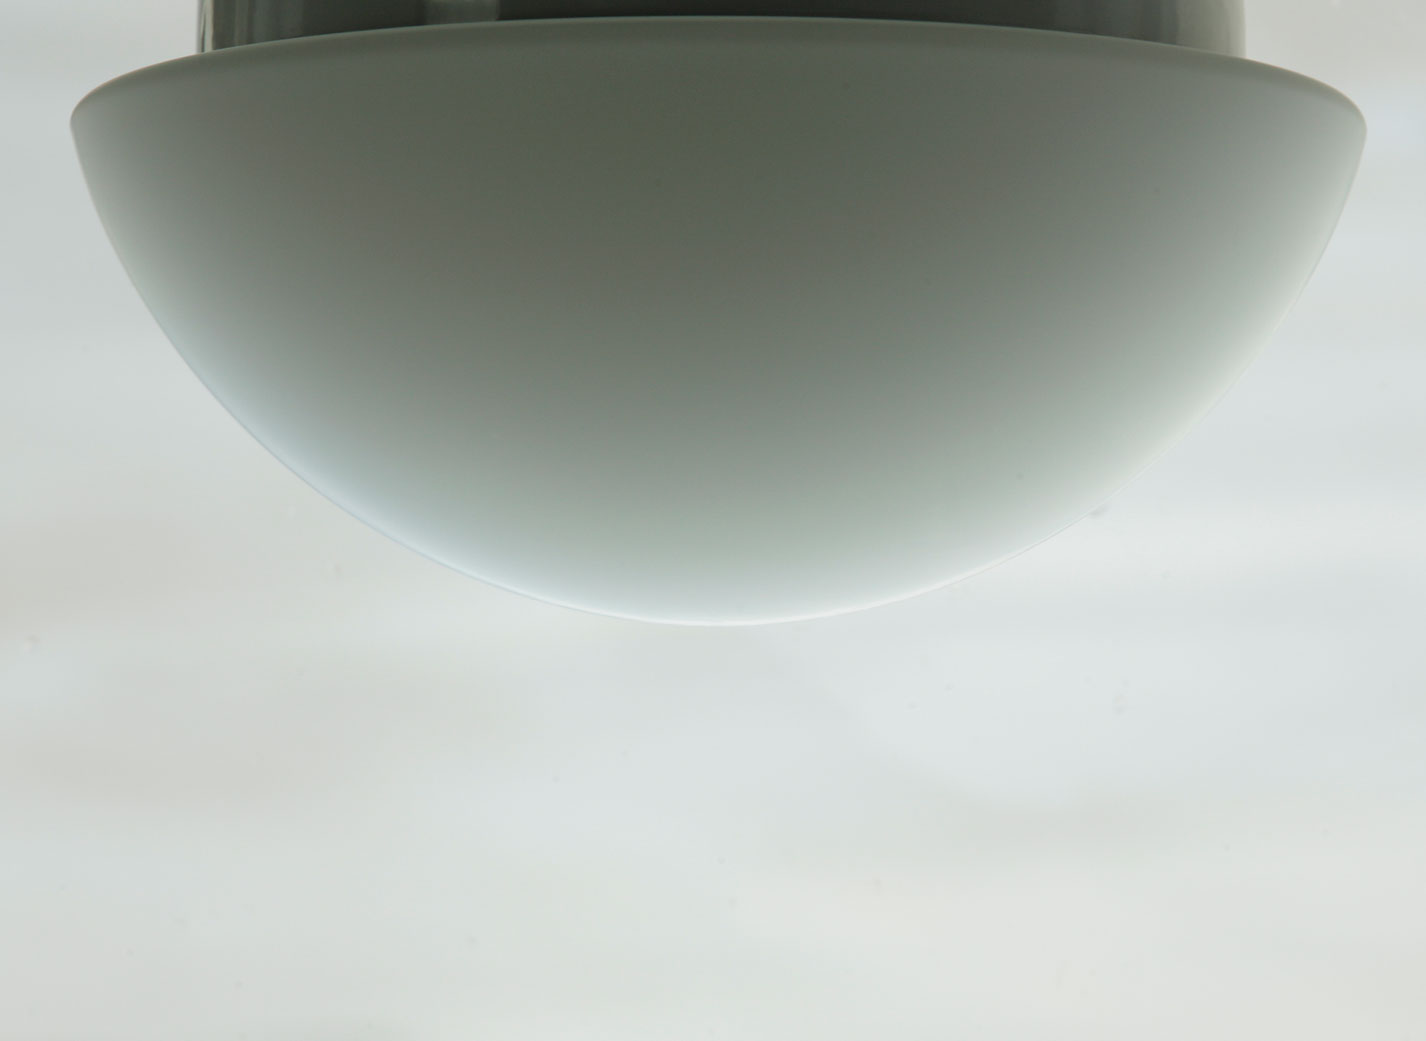 Funktionale Opalglas-Deckenleuchte AURORA LED, Ø 20–60 cm: Das 20 cm-Modell im Gegenlicht: Hochwertiges überfangenes Opalglas, samtig mattiert